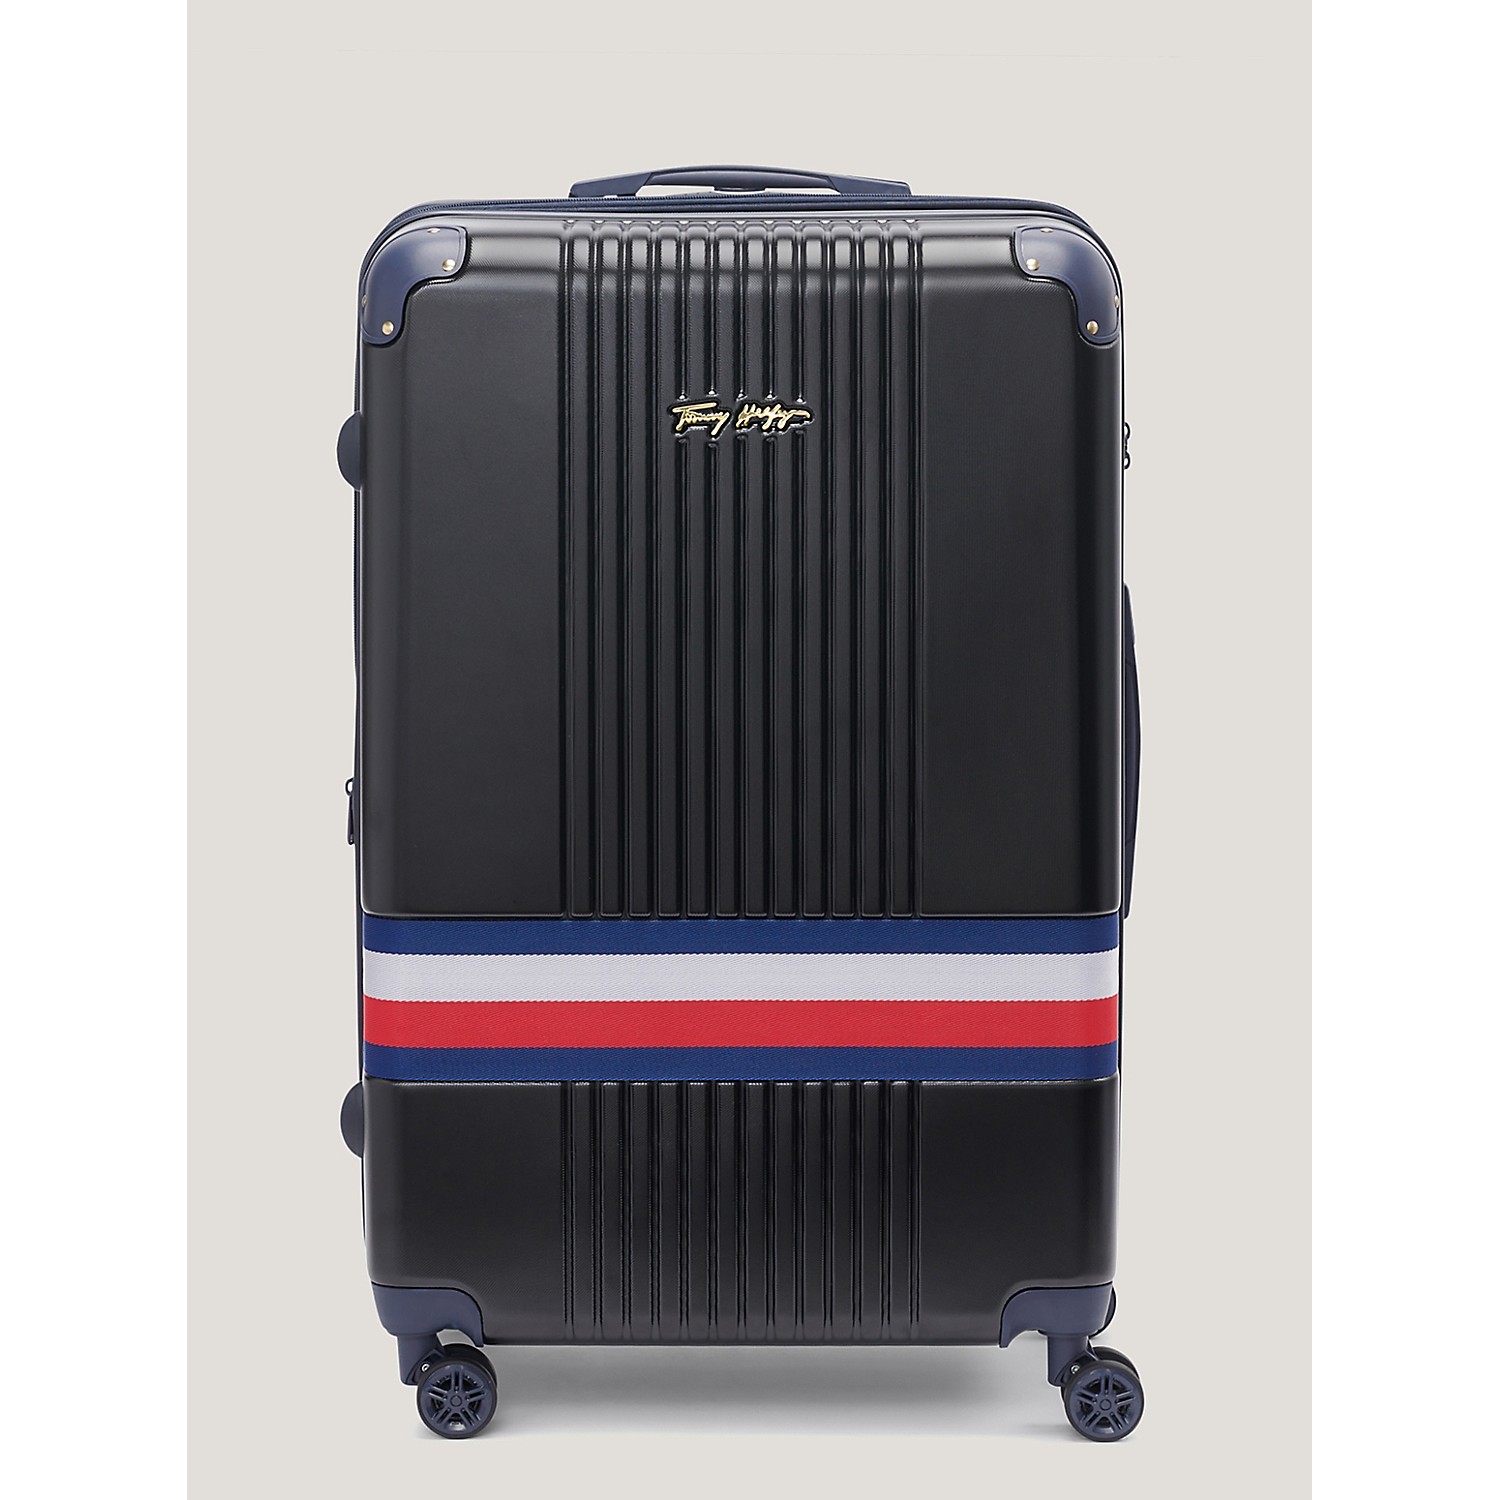 TOMMY HILFIGER 28 Hard Case Spinner Suitcase